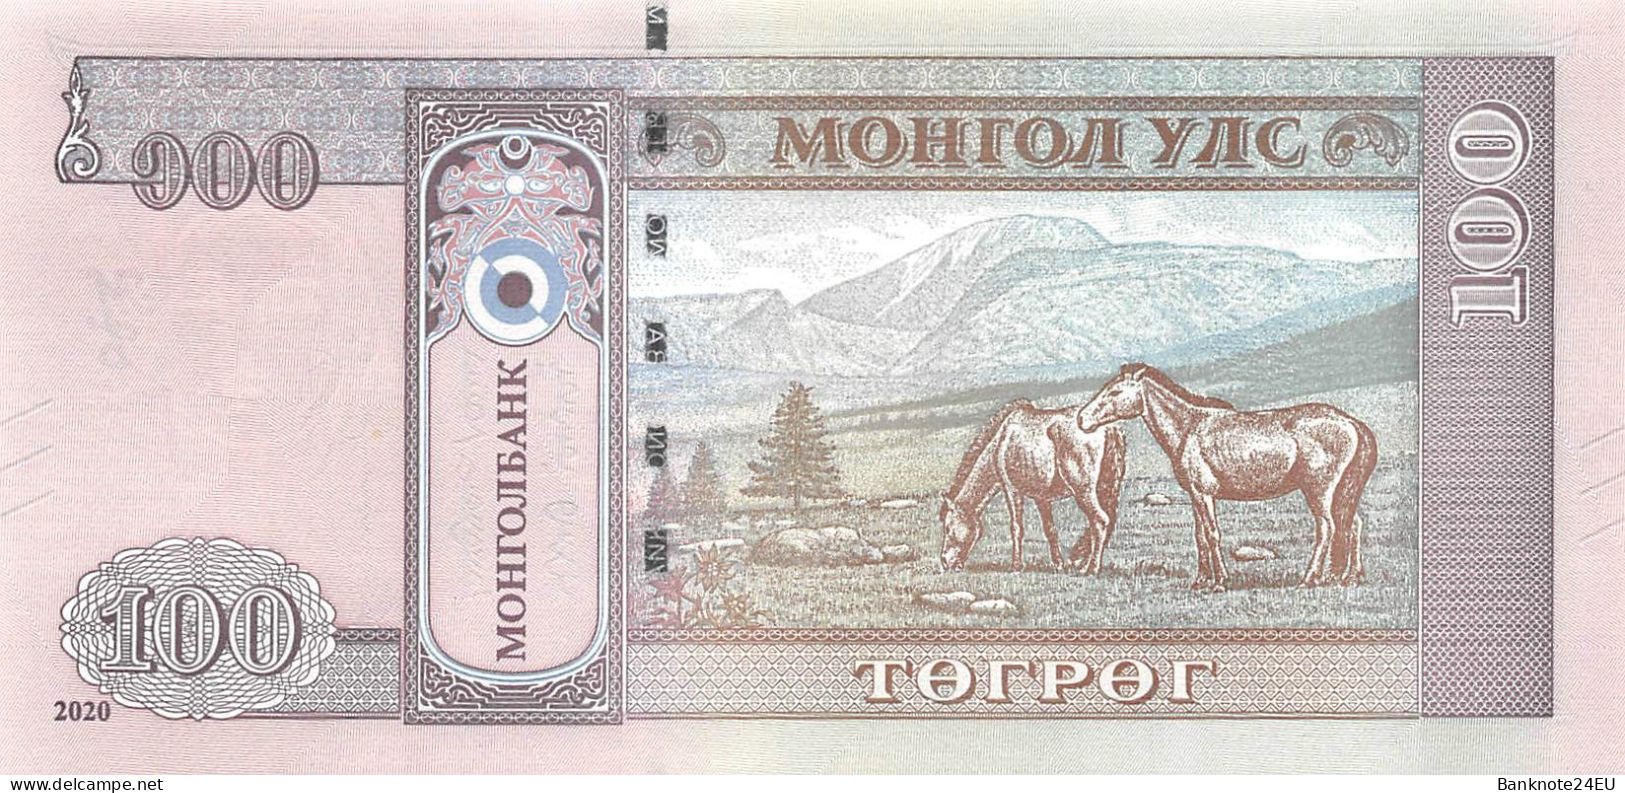 Mongolia 100 Togrog 2020 Unc Pn 73a - Mongolië